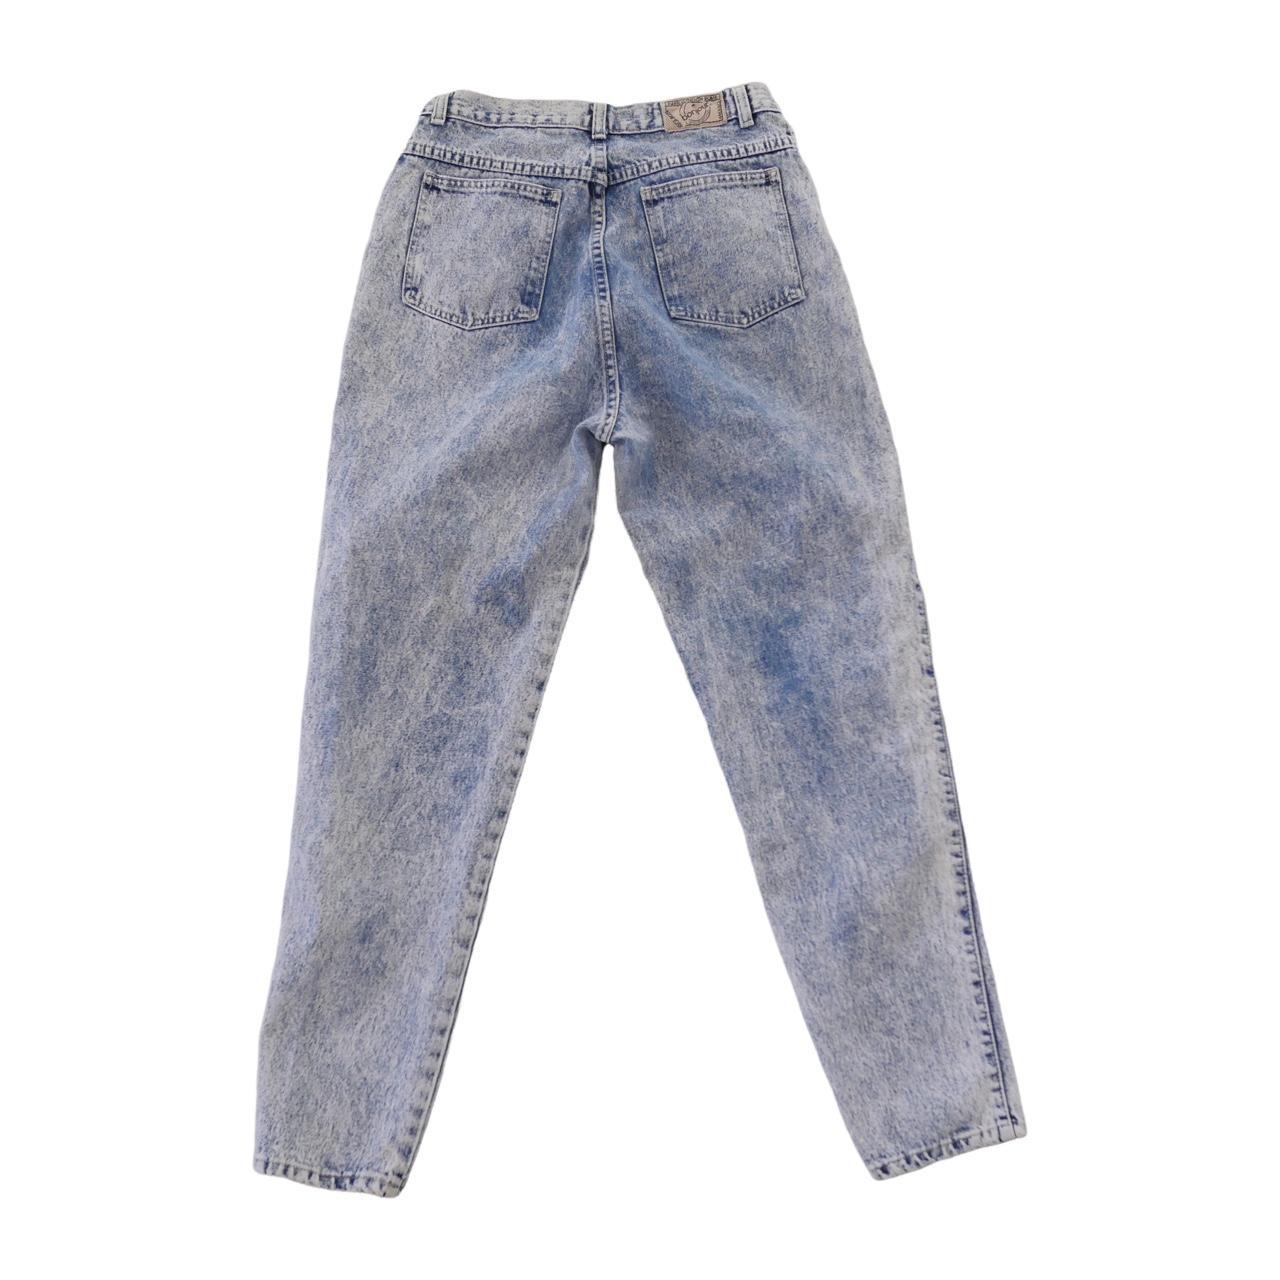 Product Image 1 - Bonjour Acid Wash jeans
8/10

28 x